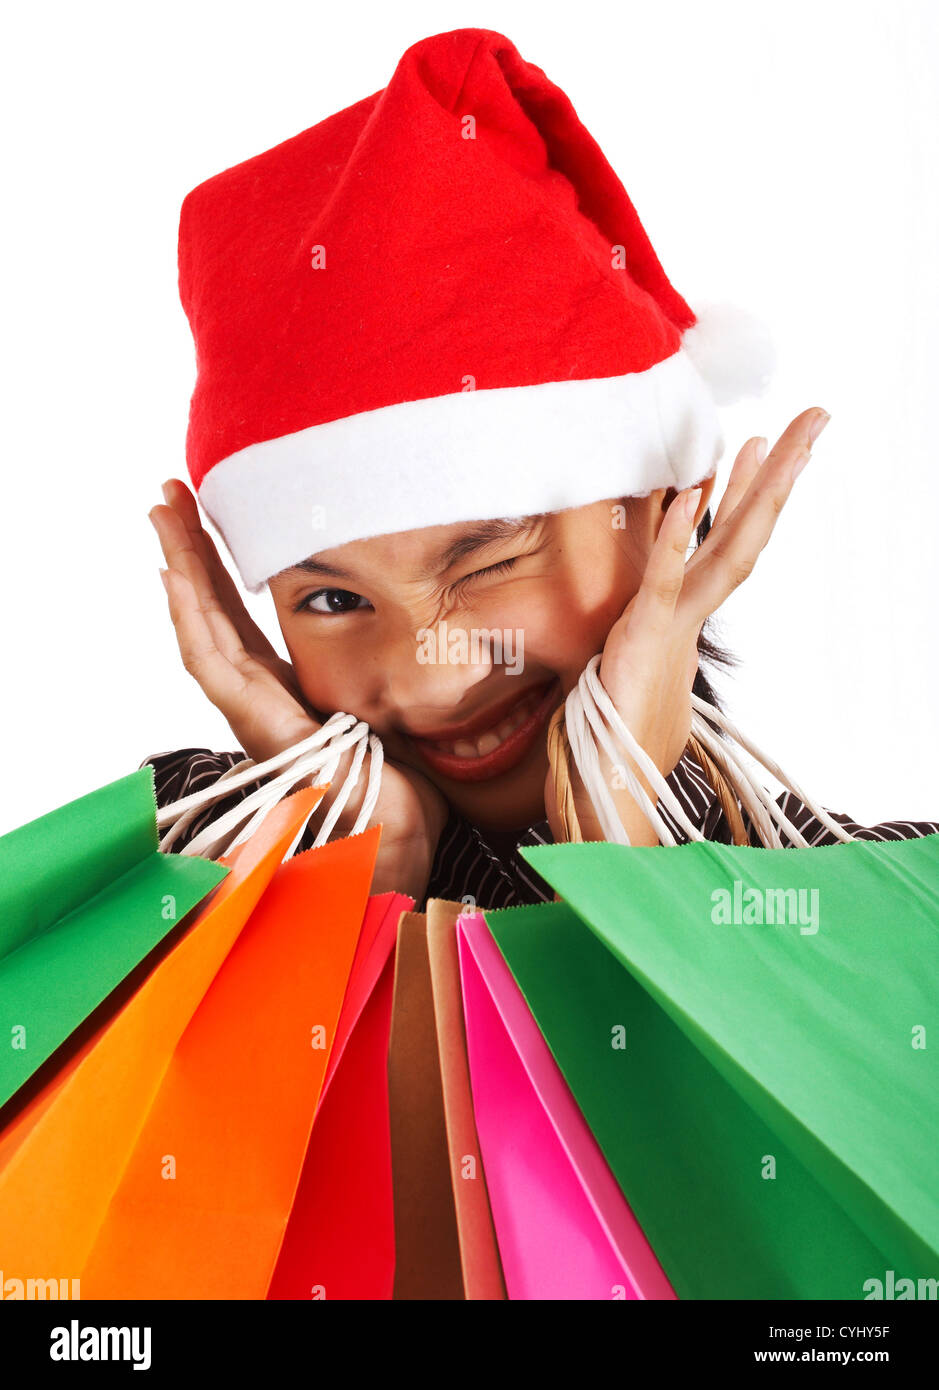 Mädchen nach einem Weihnachts-Shopping Spree viele Geschenke gekauft hat Stockfoto